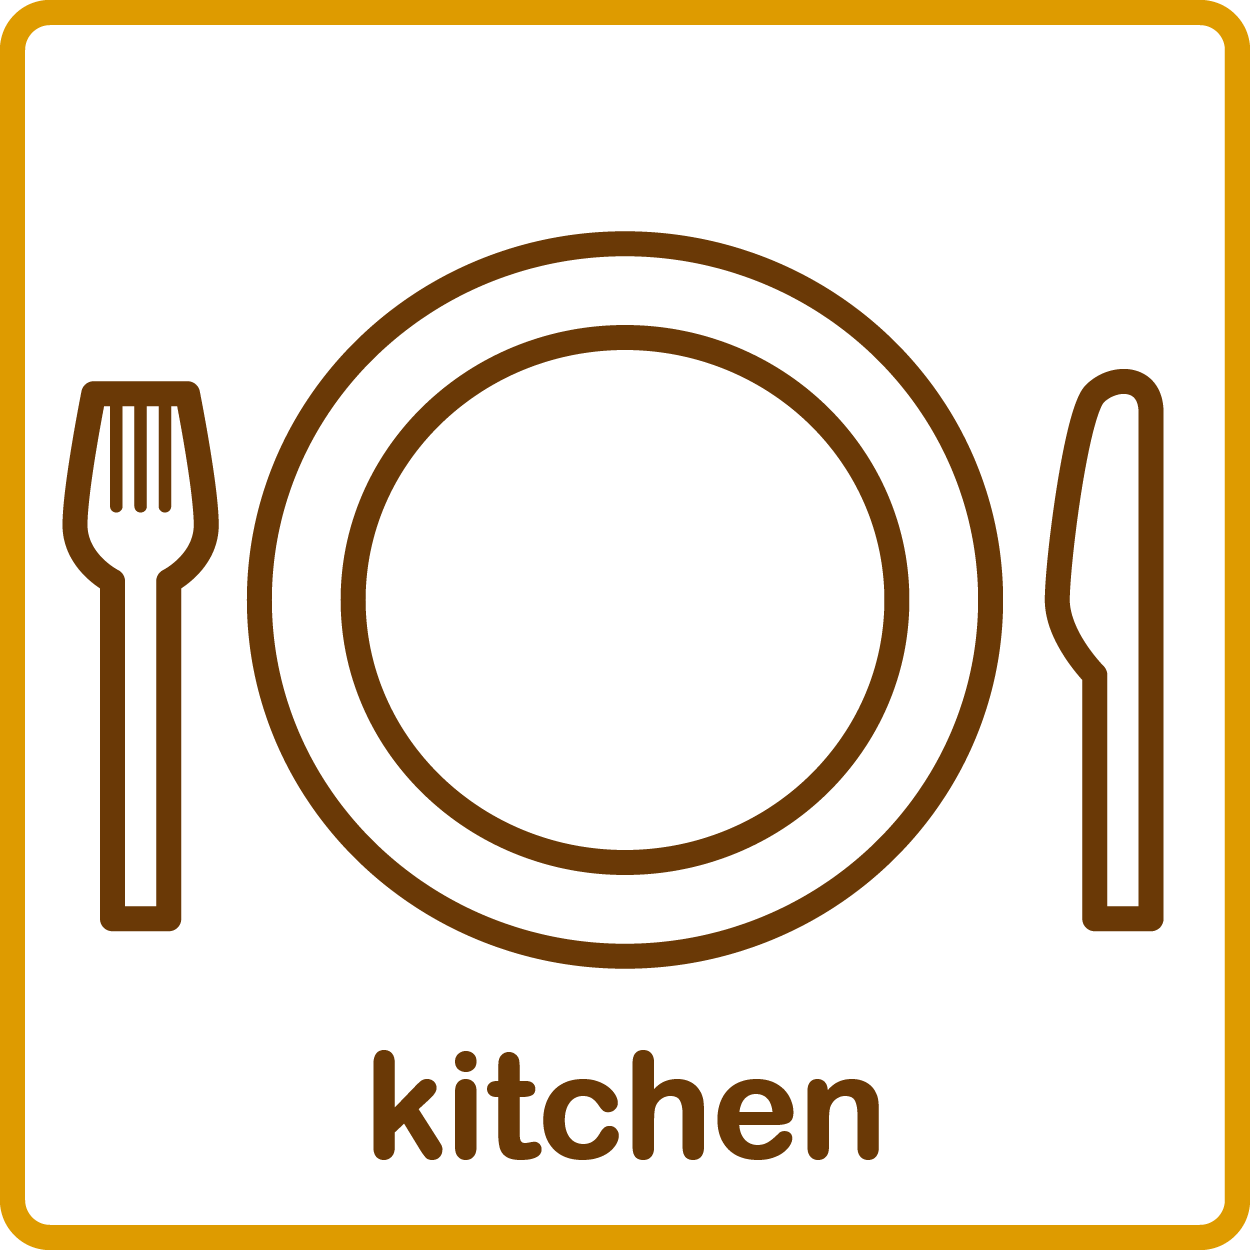 キッチン / kitchen